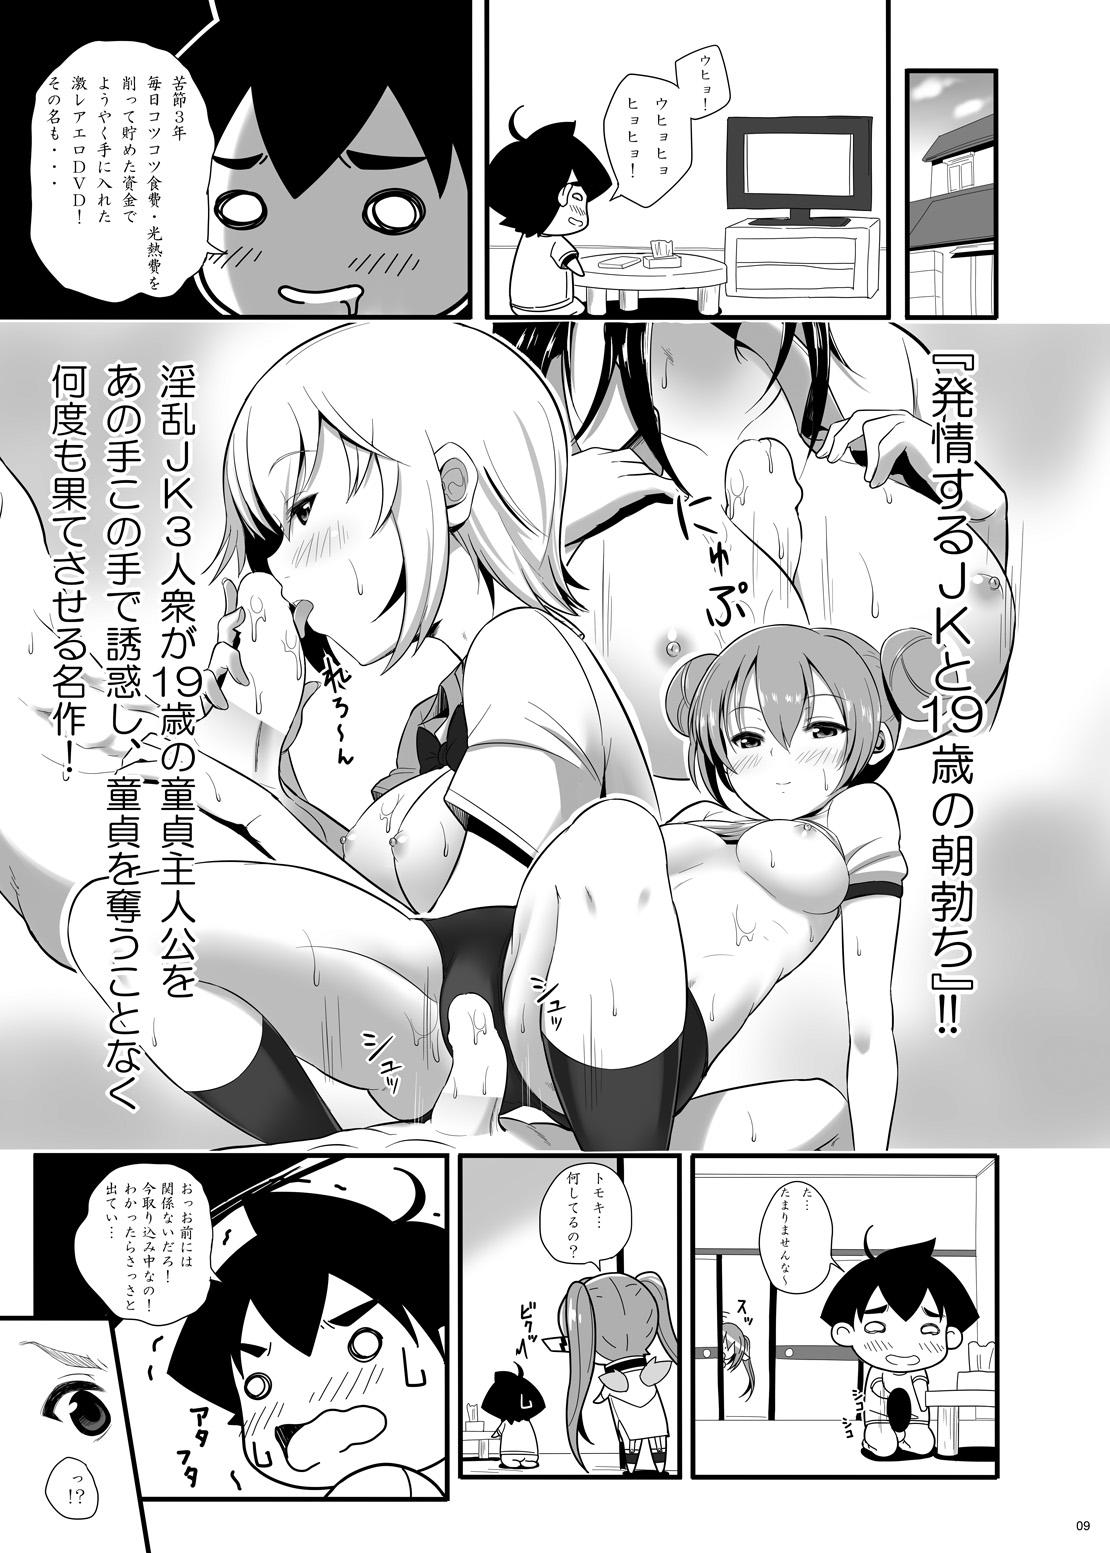 Usa Nymph ga Ninpu ni Naru Toki - Sora no otoshimono Culo - Page 8